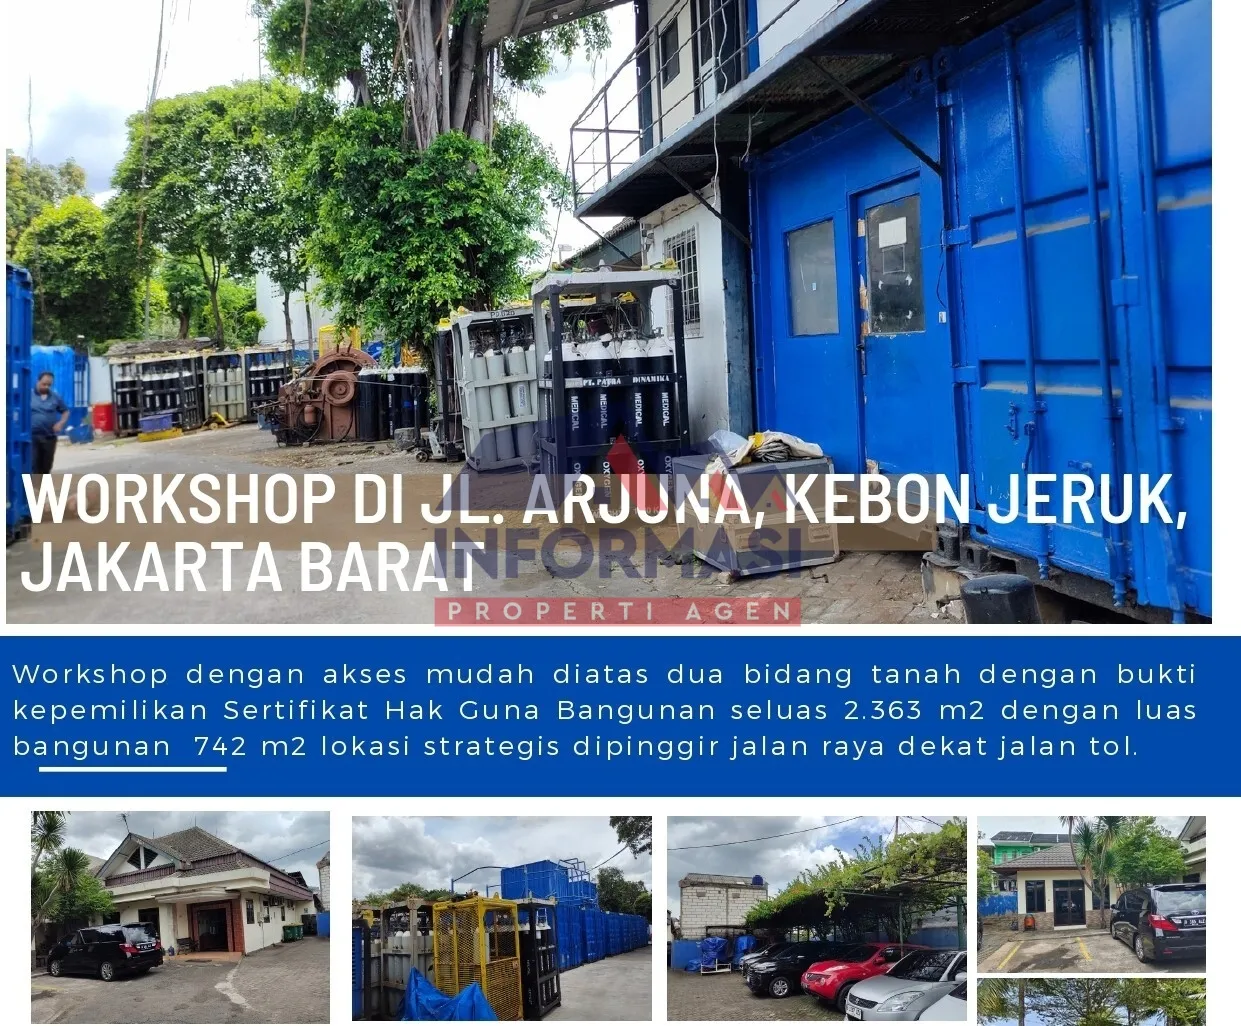 Workshop Di Jl. Arjuna Kebon Jeruk Jakarta Barat